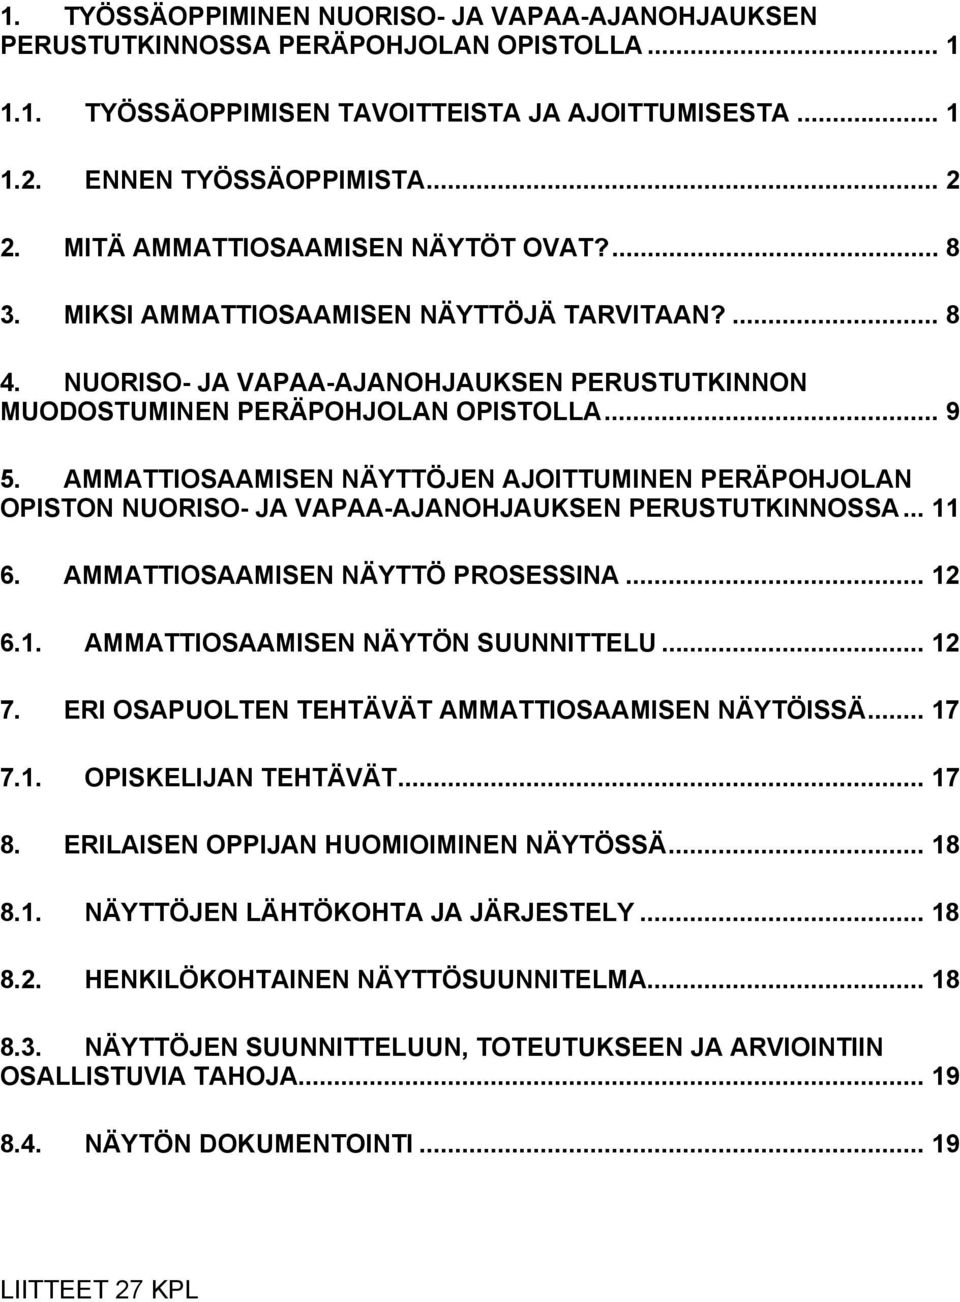 AMMATTIOSAAMISEN NÄYTTÖJEN AJOITTUMINEN PERÄPOHJOLAN OPISTON NUORISO- JA VAPAA-AJANOHJAUKSEN PERUSTUTKINNOSSA... 11 6. AMMATTIOSAAMISEN NÄYTTÖ PROSESSINA... 12 6.1. AMMATTIOSAAMISEN NÄYTÖN SUUNNITTELU.